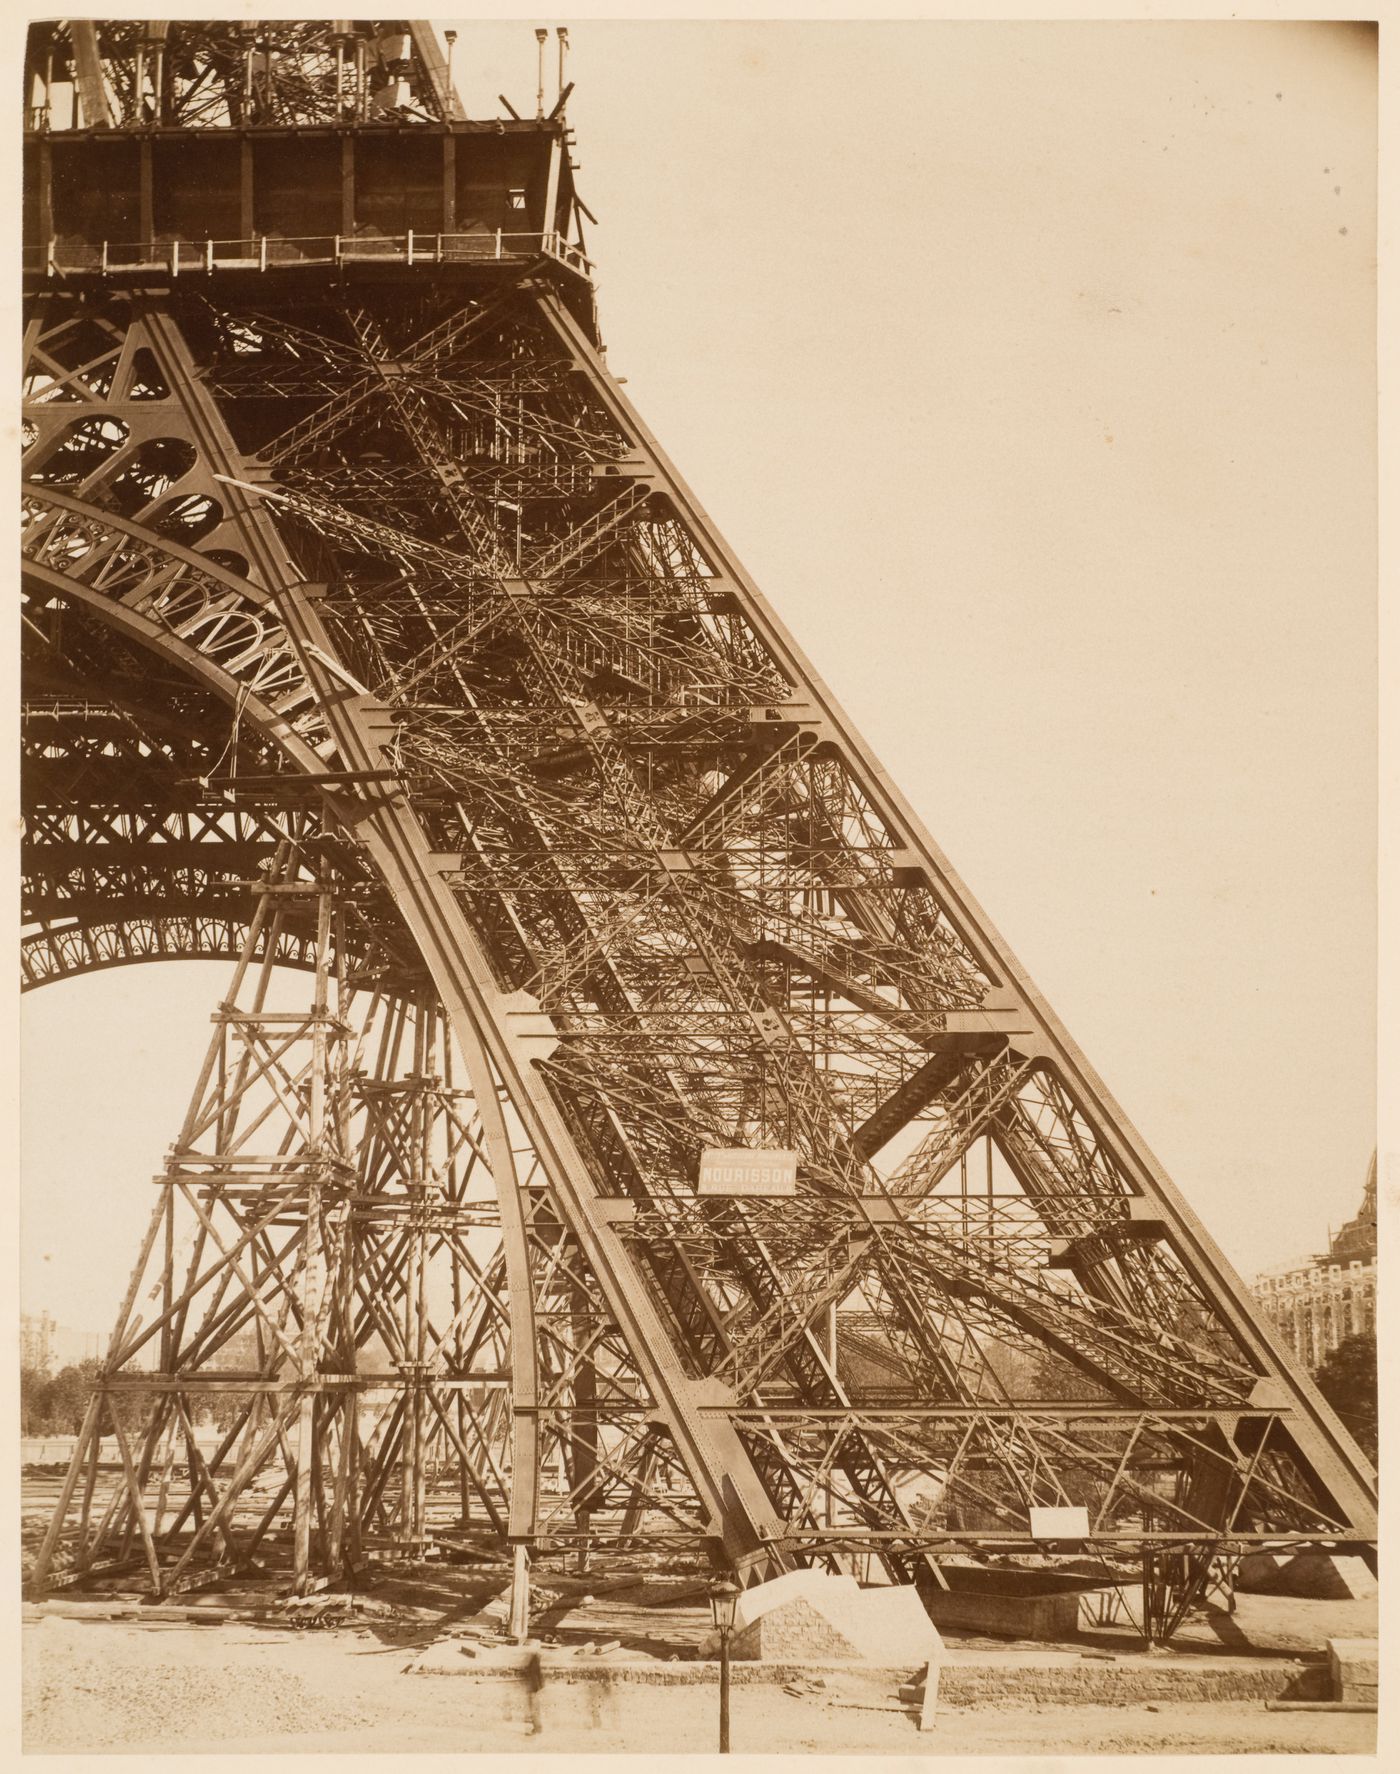 Construction of the Tour Eiffel, Paris, France